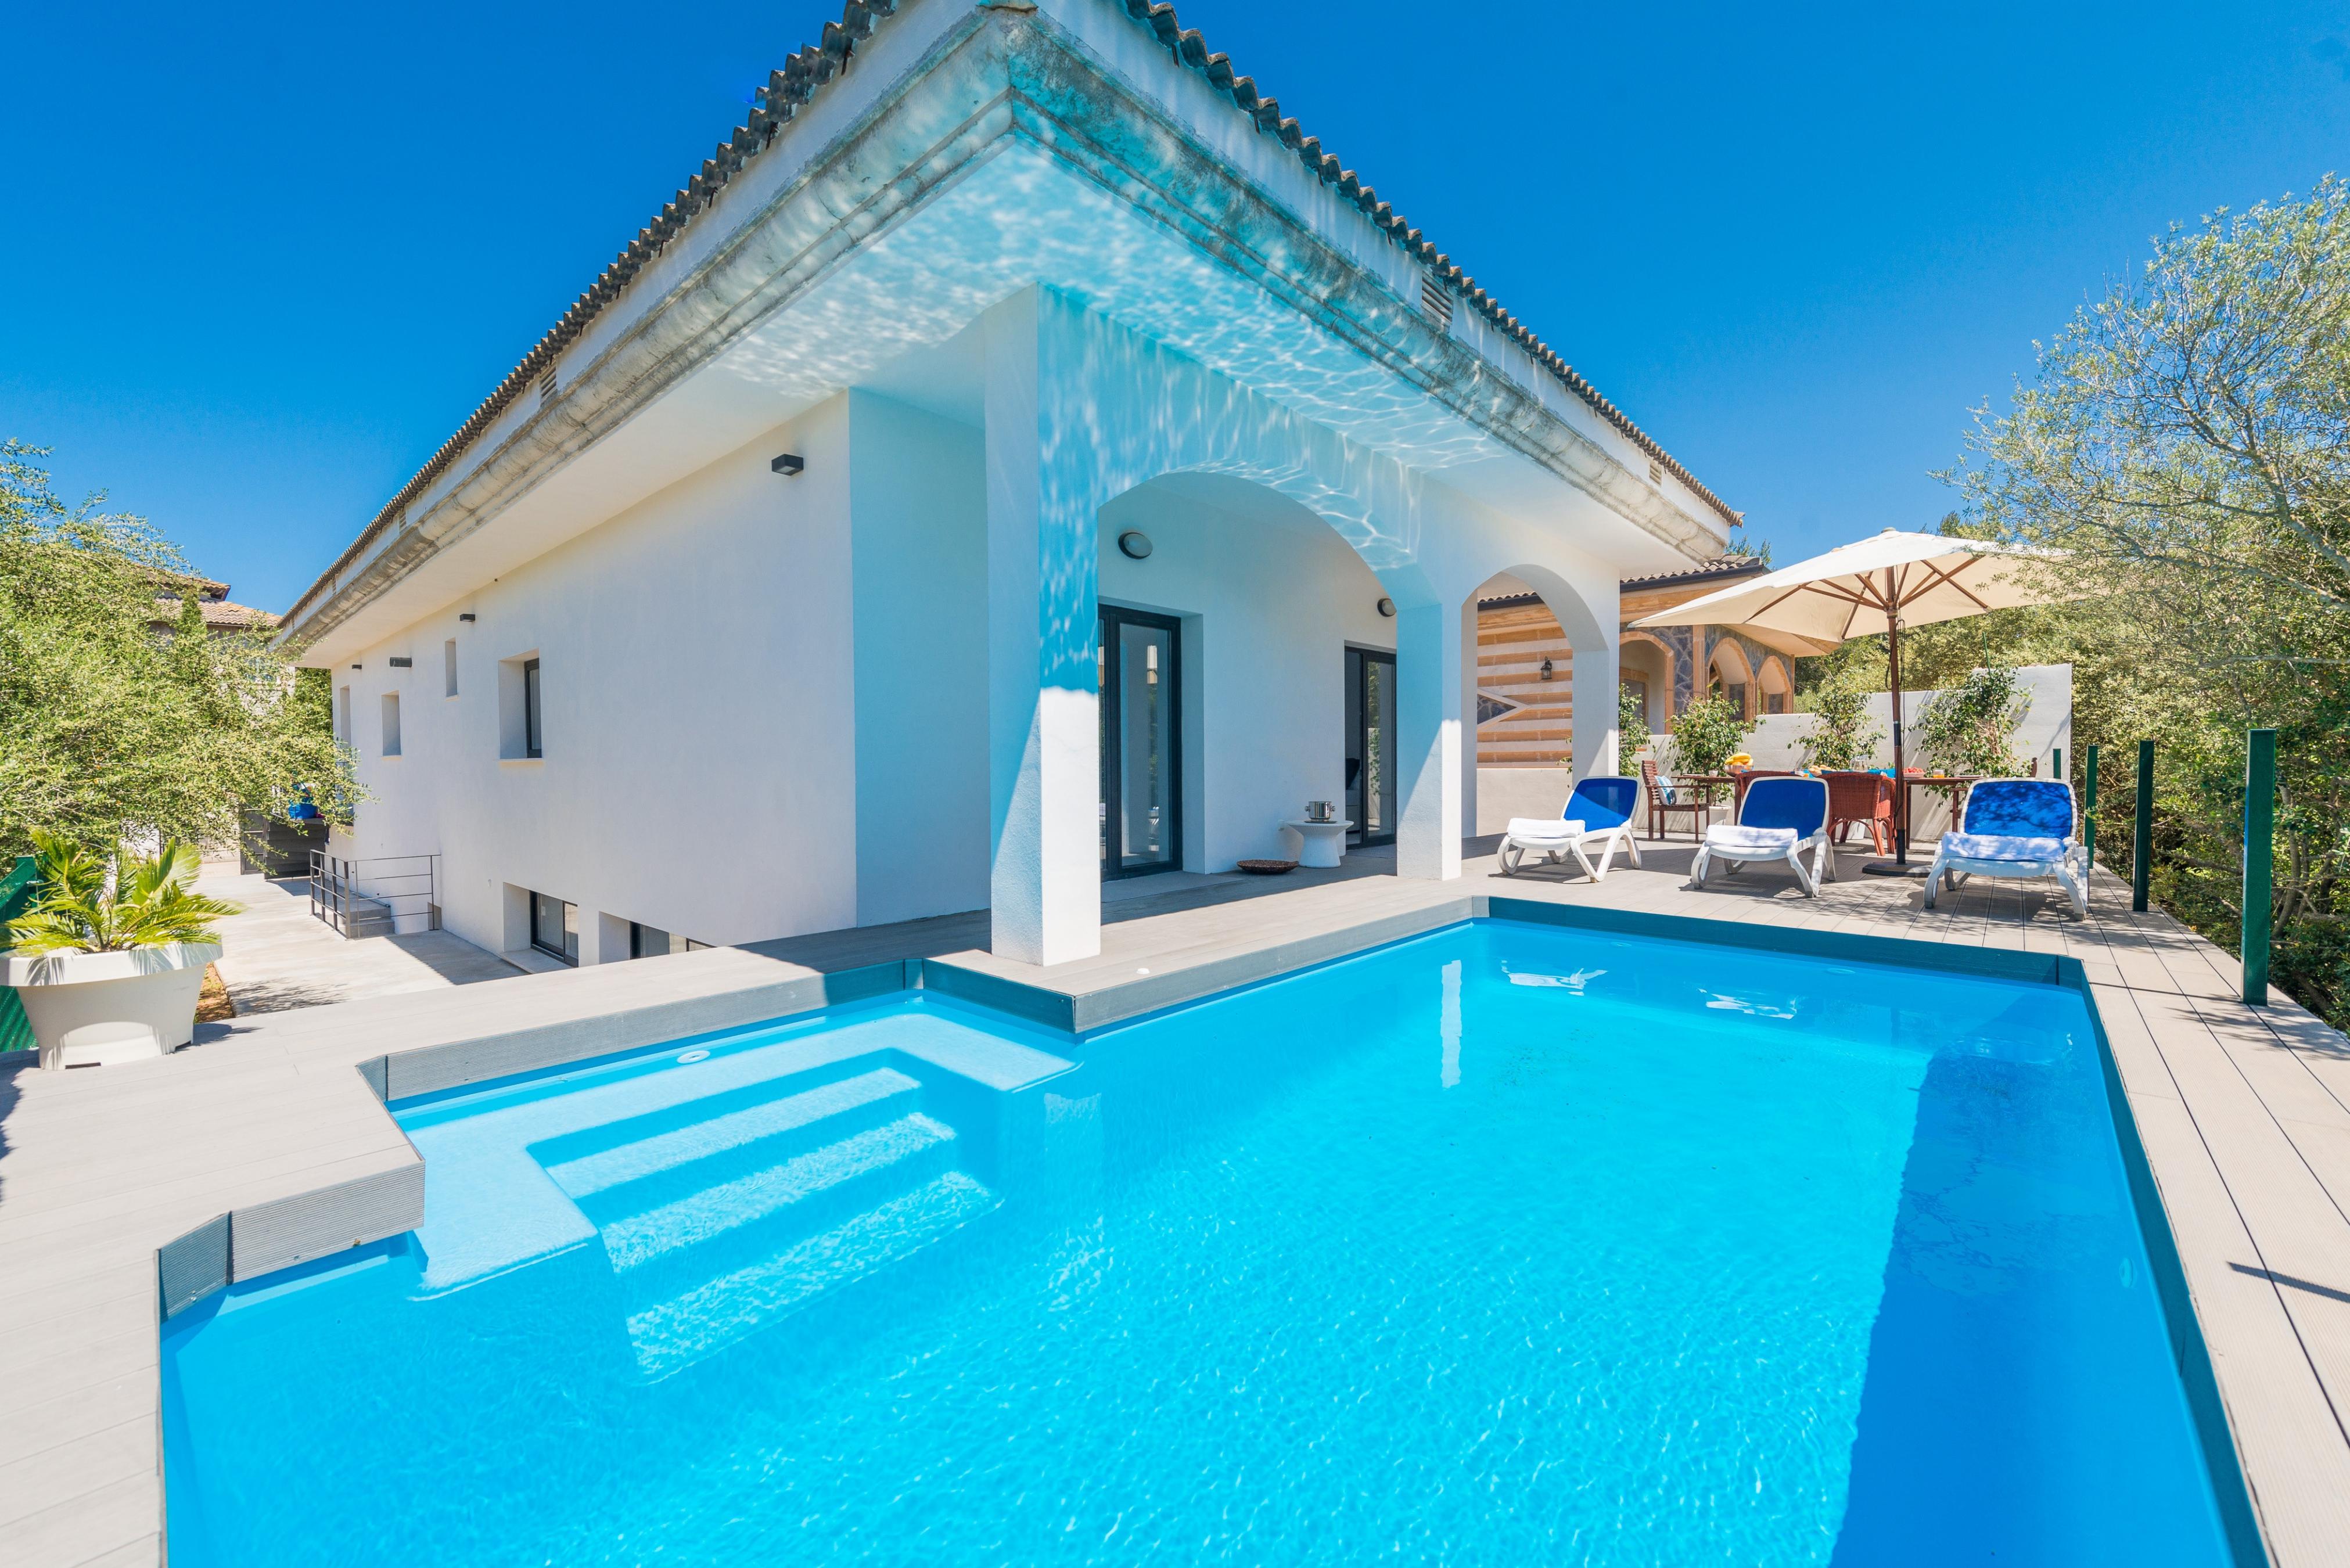 Property Image 1 - VILLA MARINA - Villa with private pool in Son Serra de Marina. Free WiFi